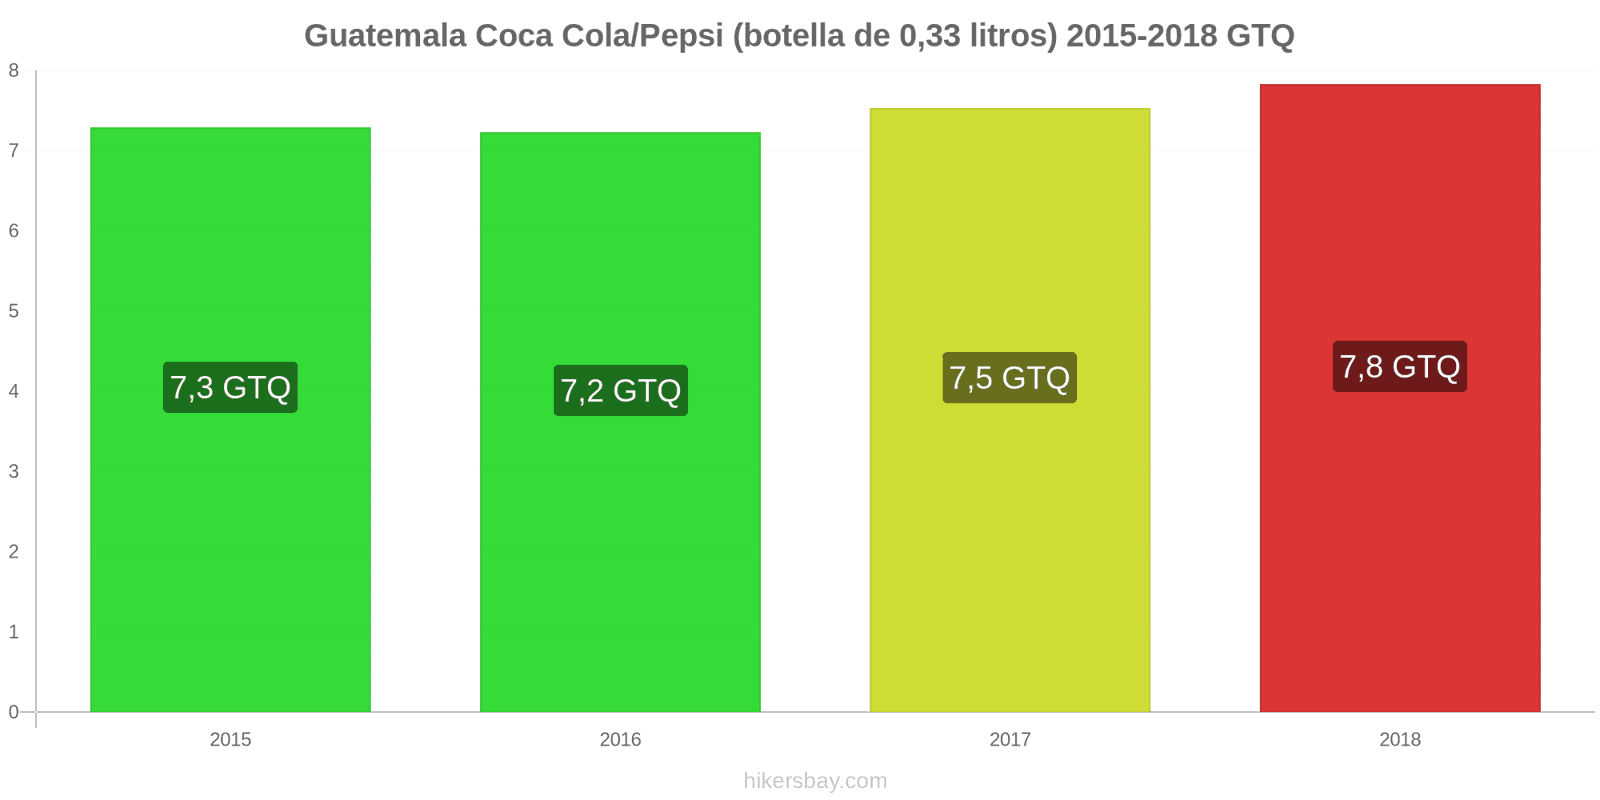 Guatemala cambios de precios Coca-Cola/Pepsi (botella de 0.33 litros) hikersbay.com